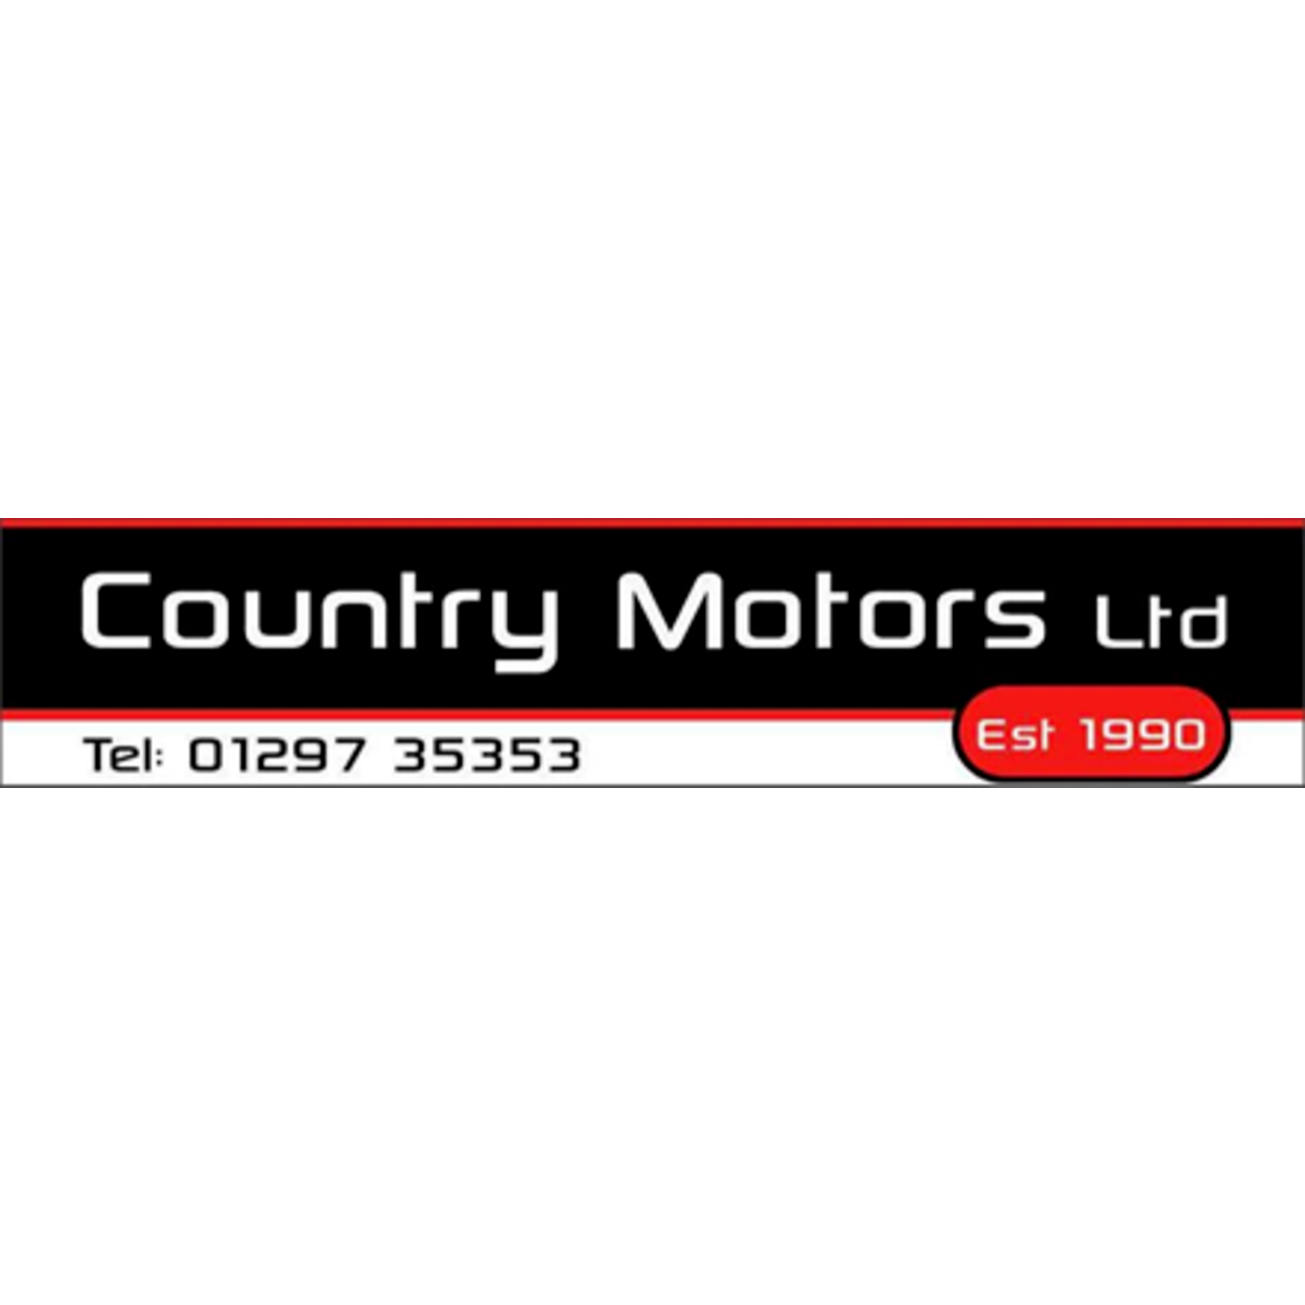 Country Motors Ltd - Axminster, Devon EX13 5HU - 01297 35353 | ShowMeLocal.com